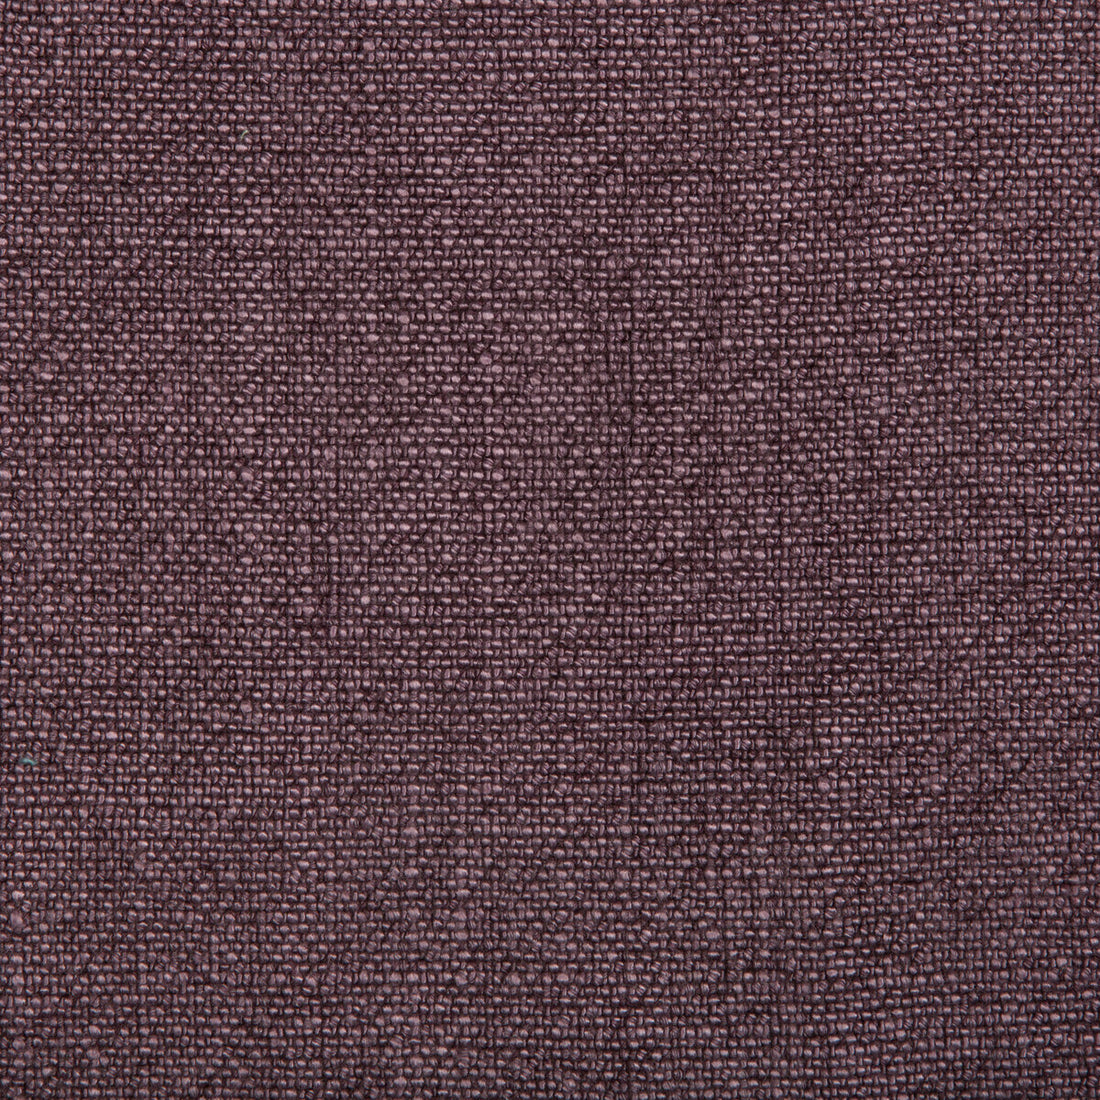 Kravet Basics fabric in 35189-10 color - pattern 35189.10.0 - by Kravet Basics